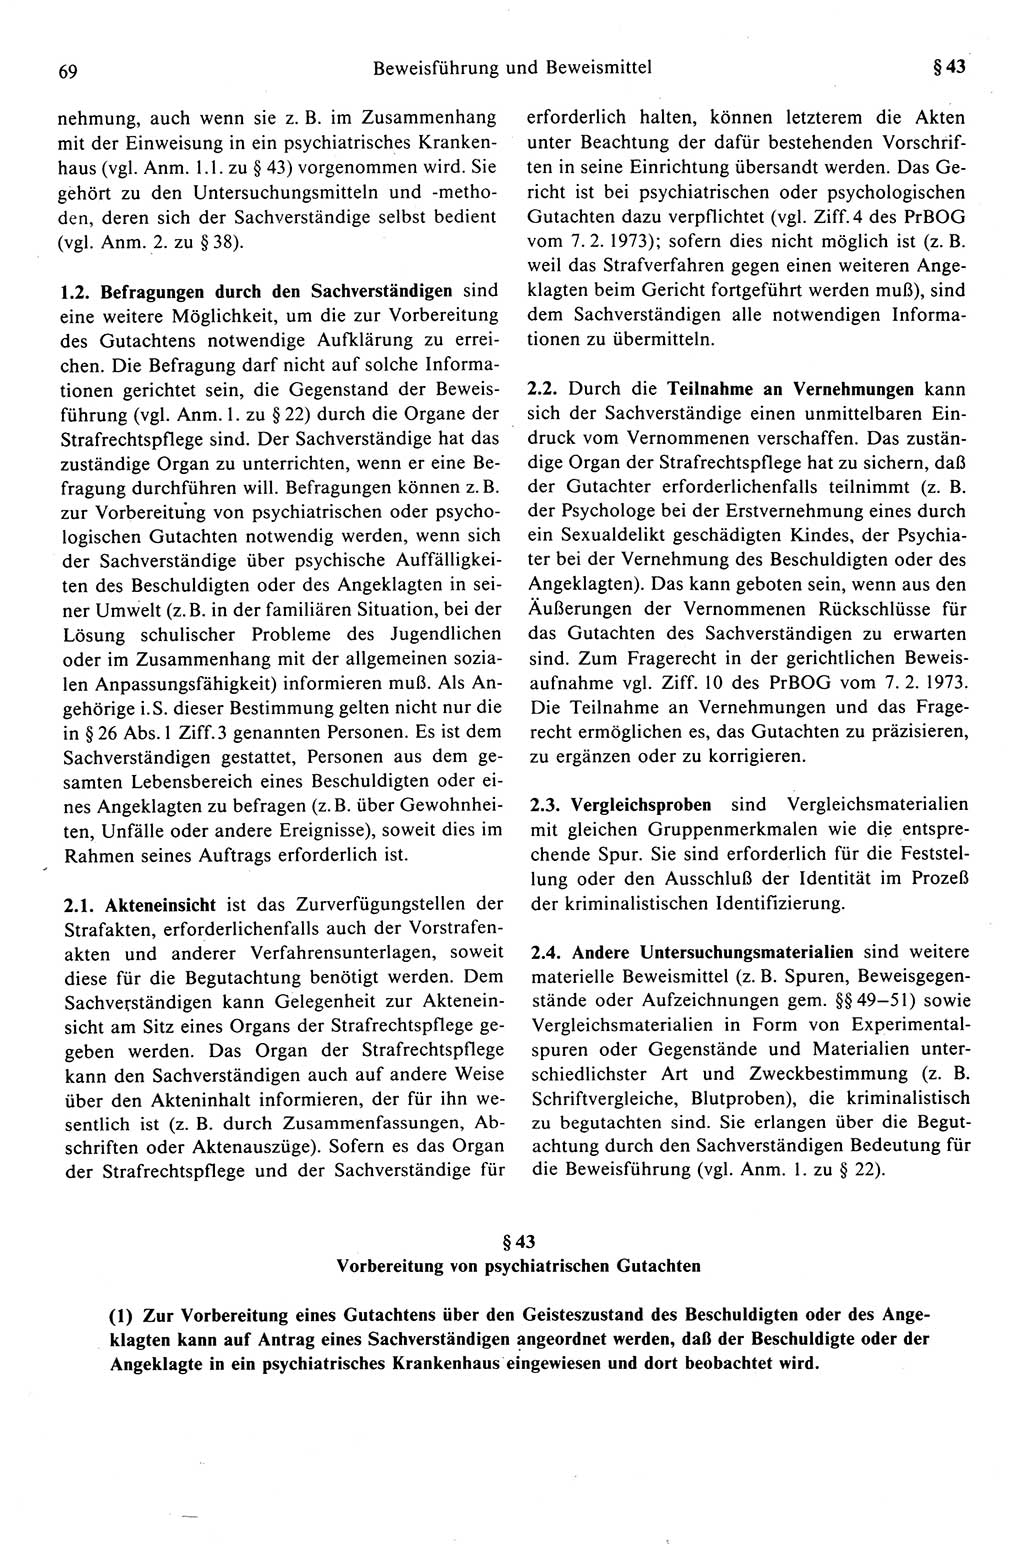 Strafprozeßrecht der DDR (Deutsche Demokratische Republik), Kommentar zur Strafprozeßordnung (StPO) 1989, Seite 69 (Strafprozeßr. DDR Komm. StPO 1989, S. 69)